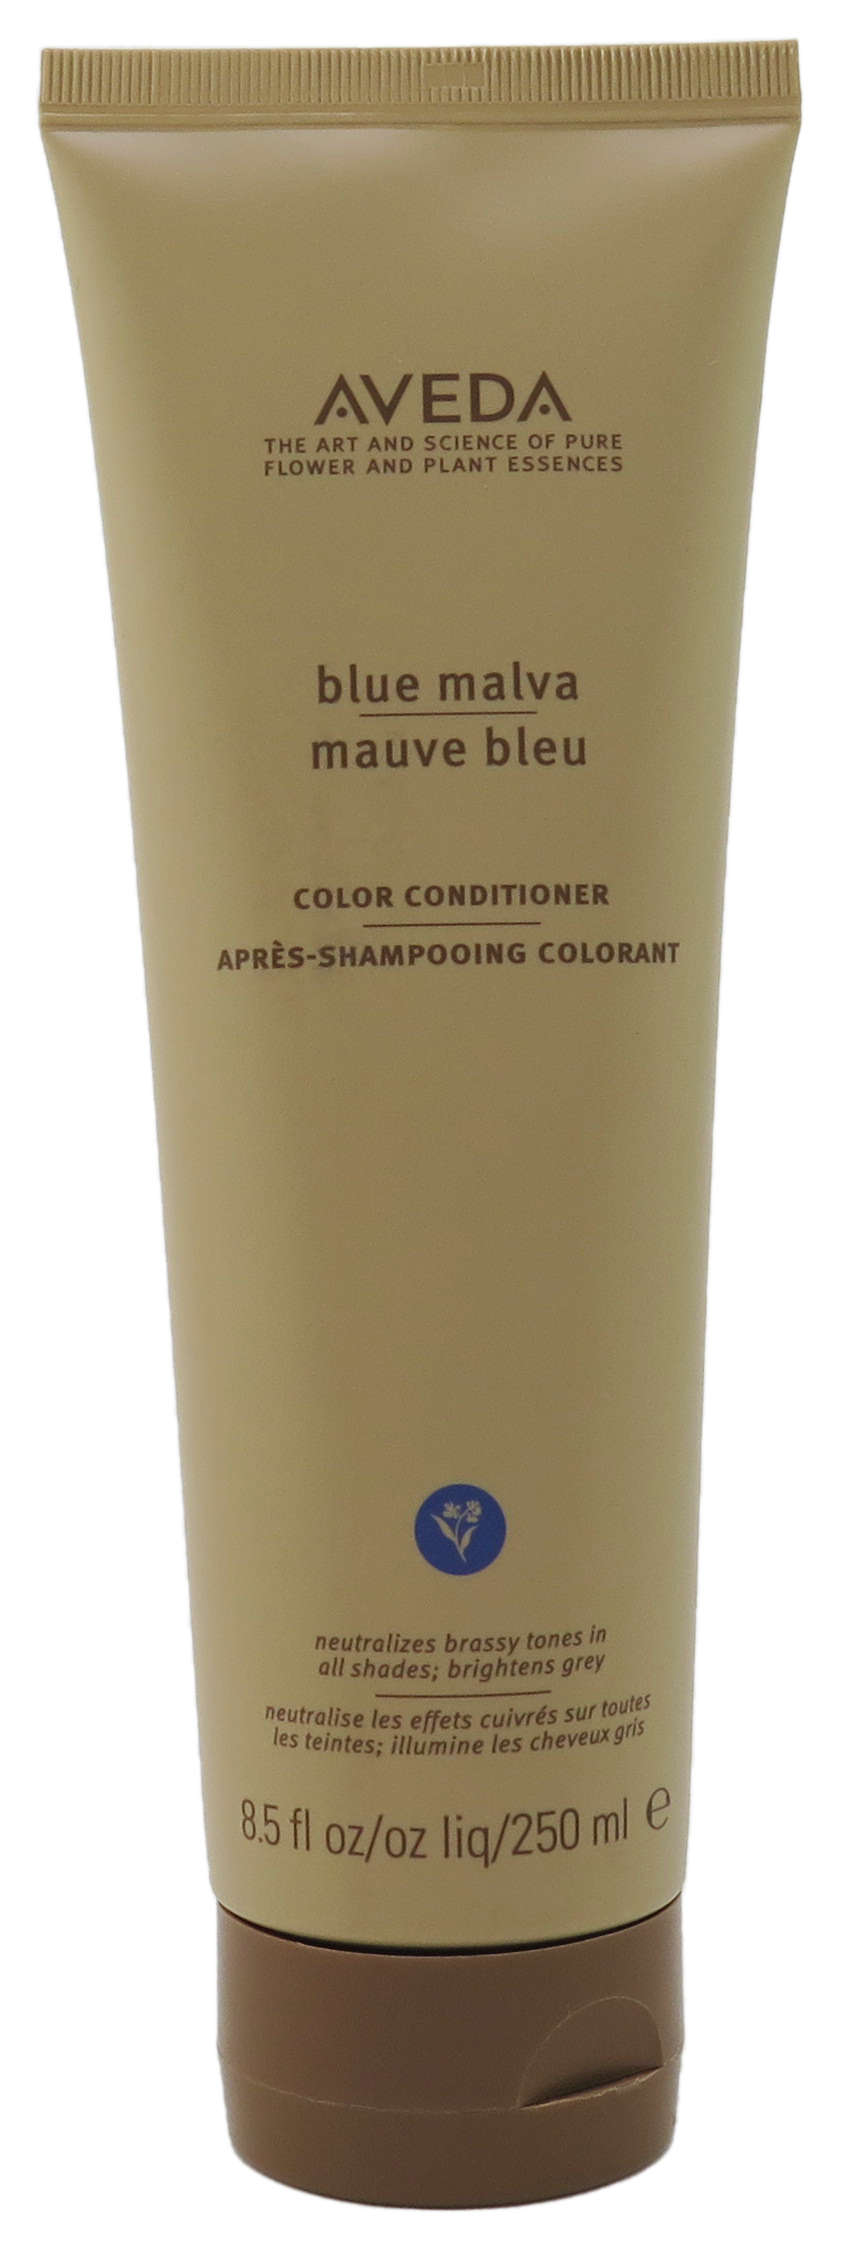 Aveda Blue malva Color Conditioner 8.5 fl oz